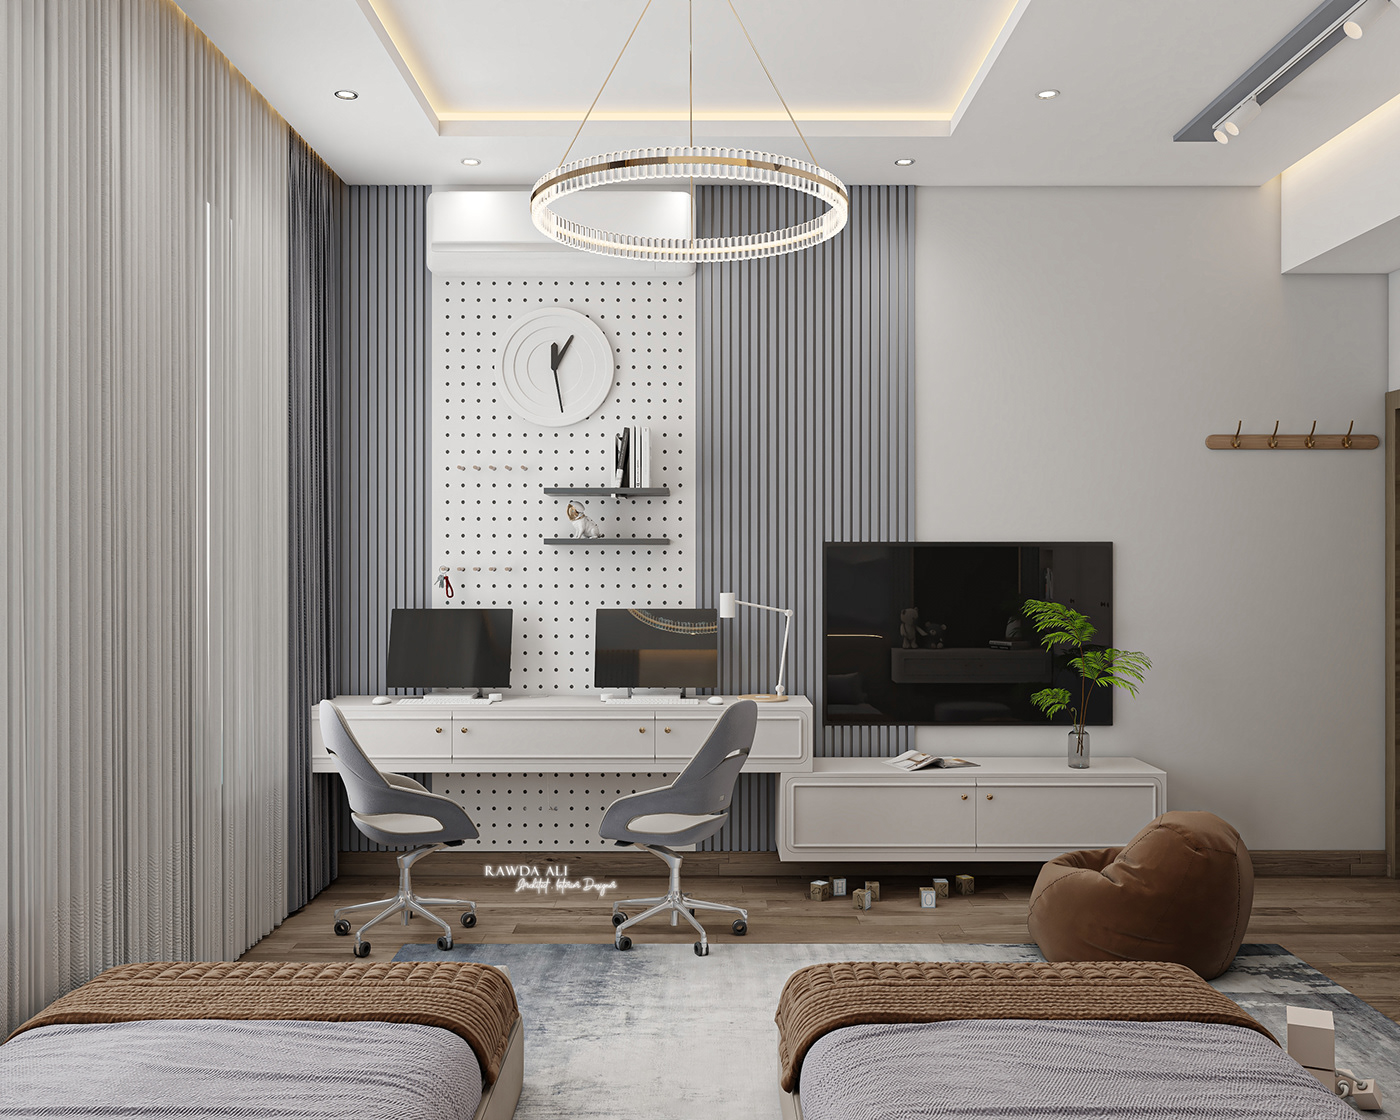 bed interior design  Render visualization 3ds max 3dmodeling 3Ddesigner 3dvisualizer 3drendering interiordesign